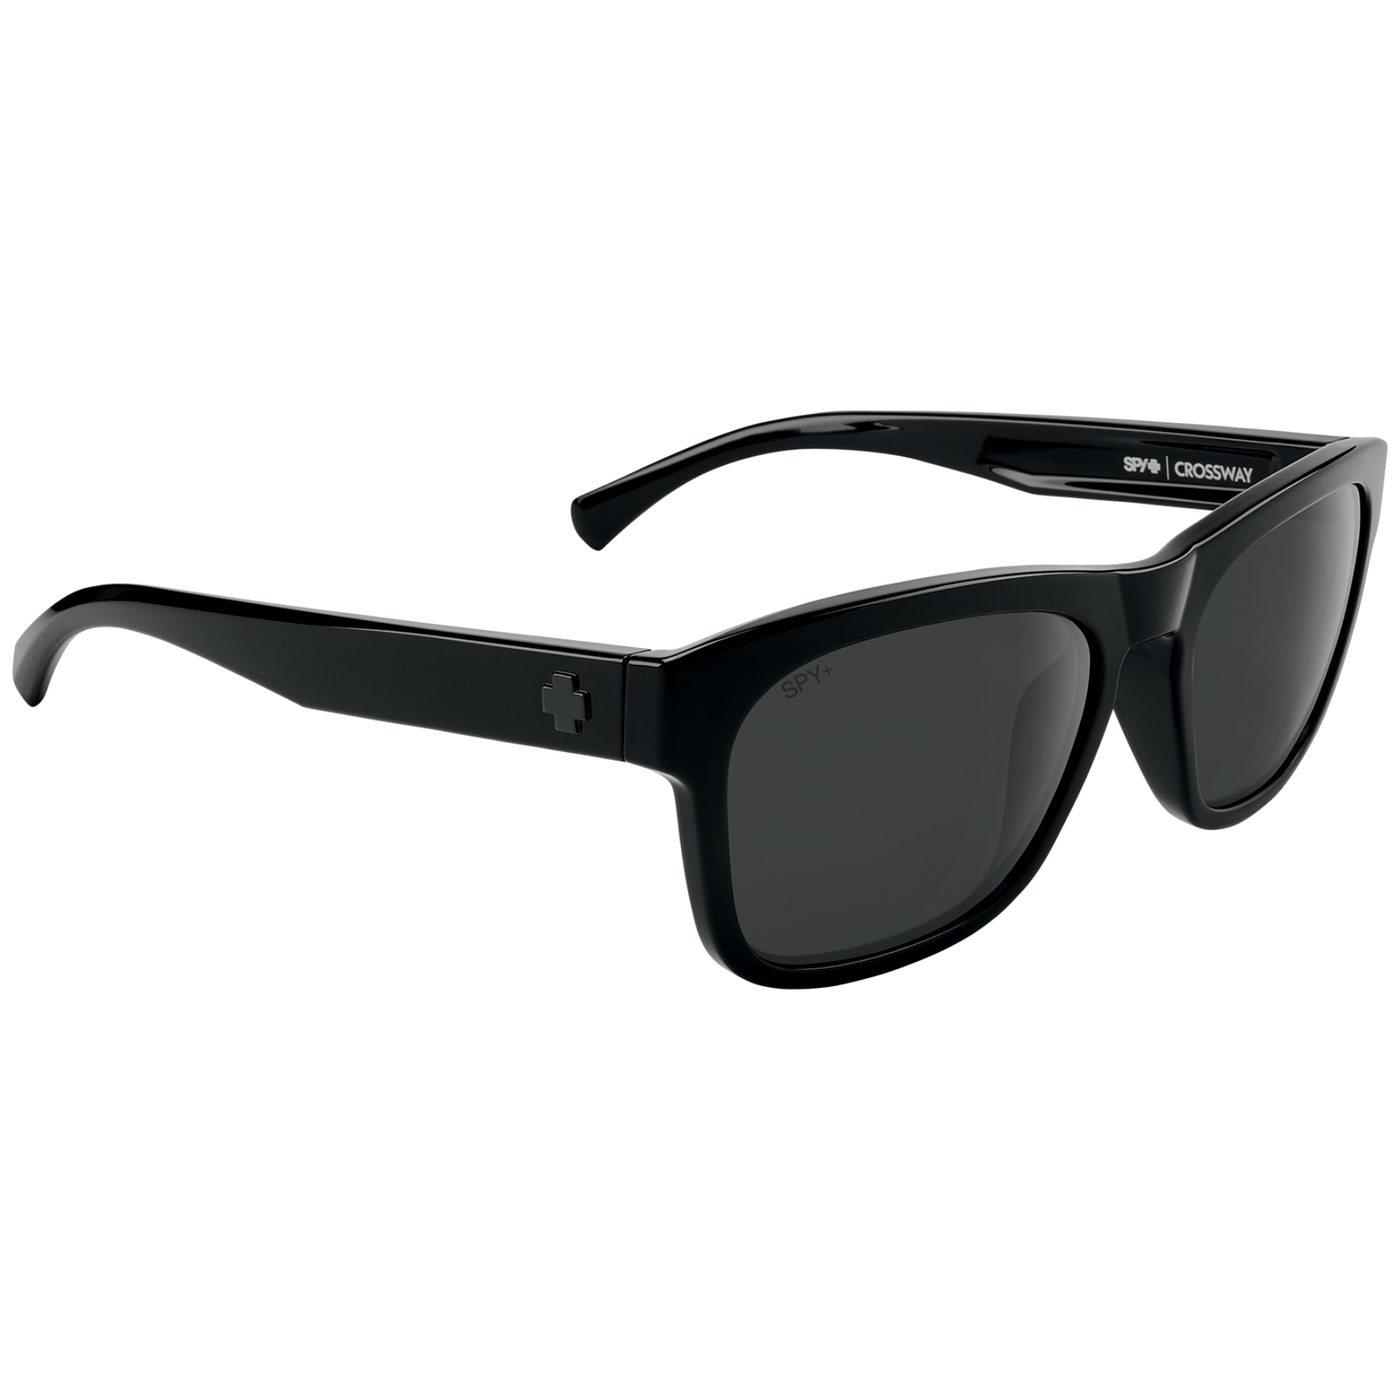 spy crossway sunglasses